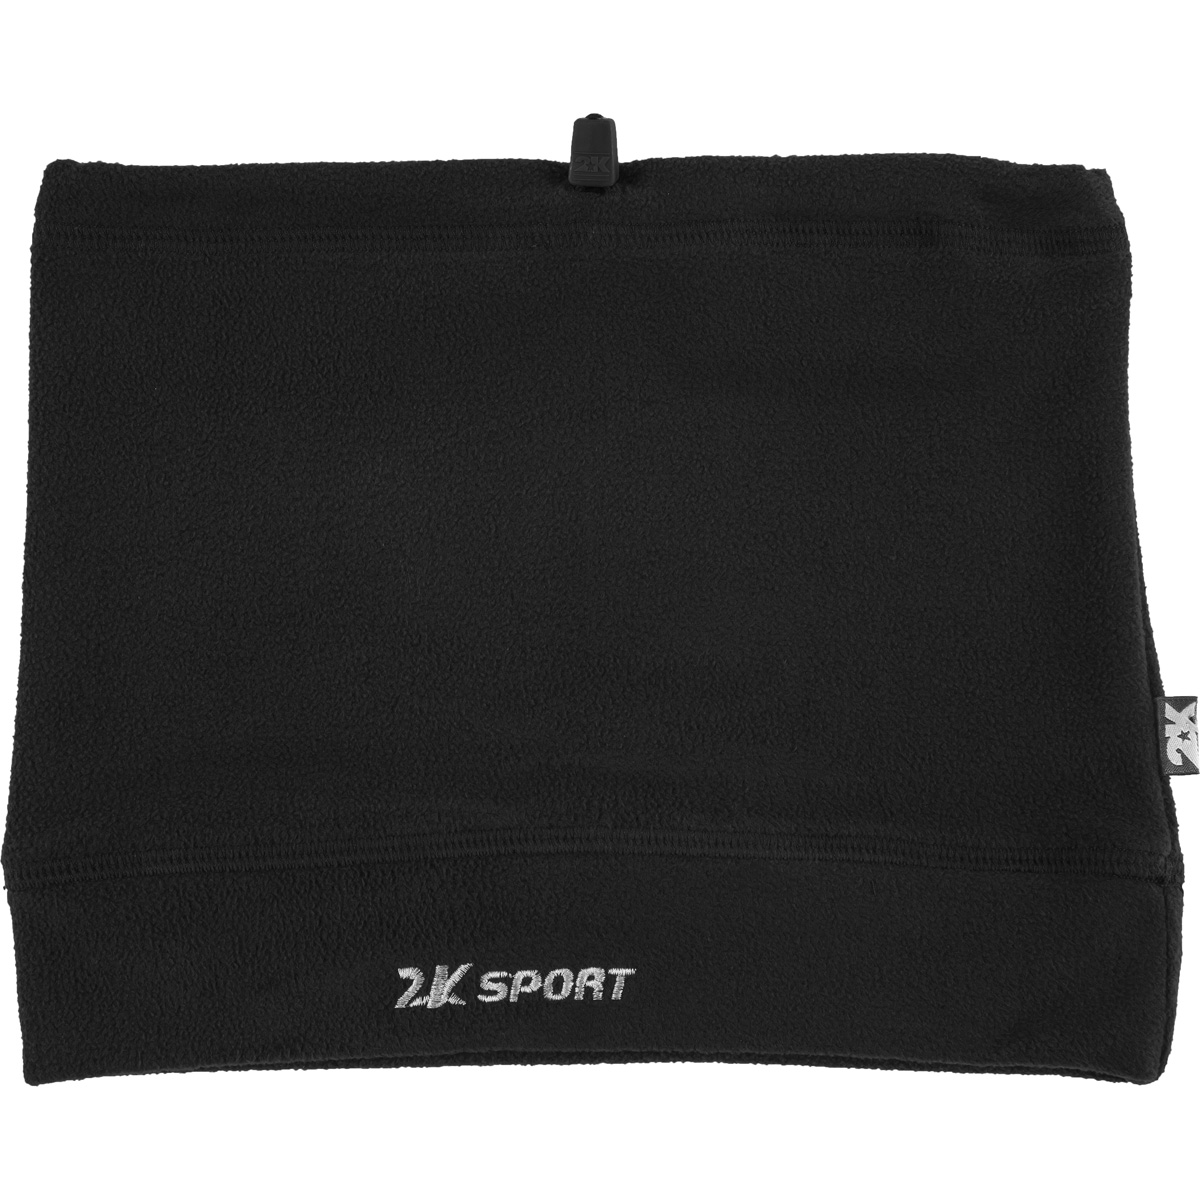 Шарф-трансформер 2K Sport Classic, цвет: черный. 124025-2. Размер универсальный